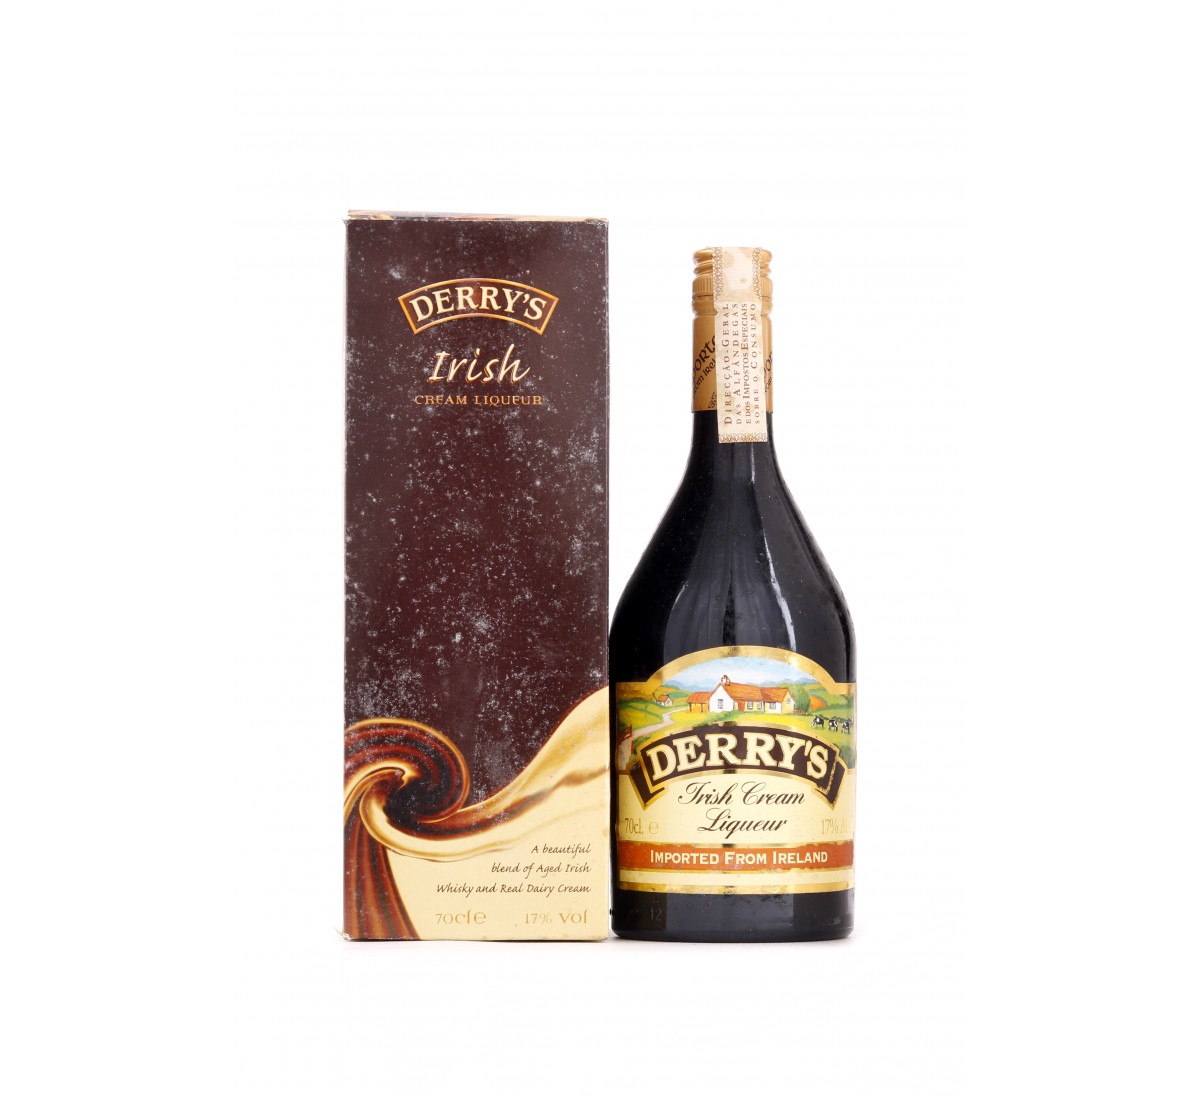 DERRY'S, Irish cream liqueur